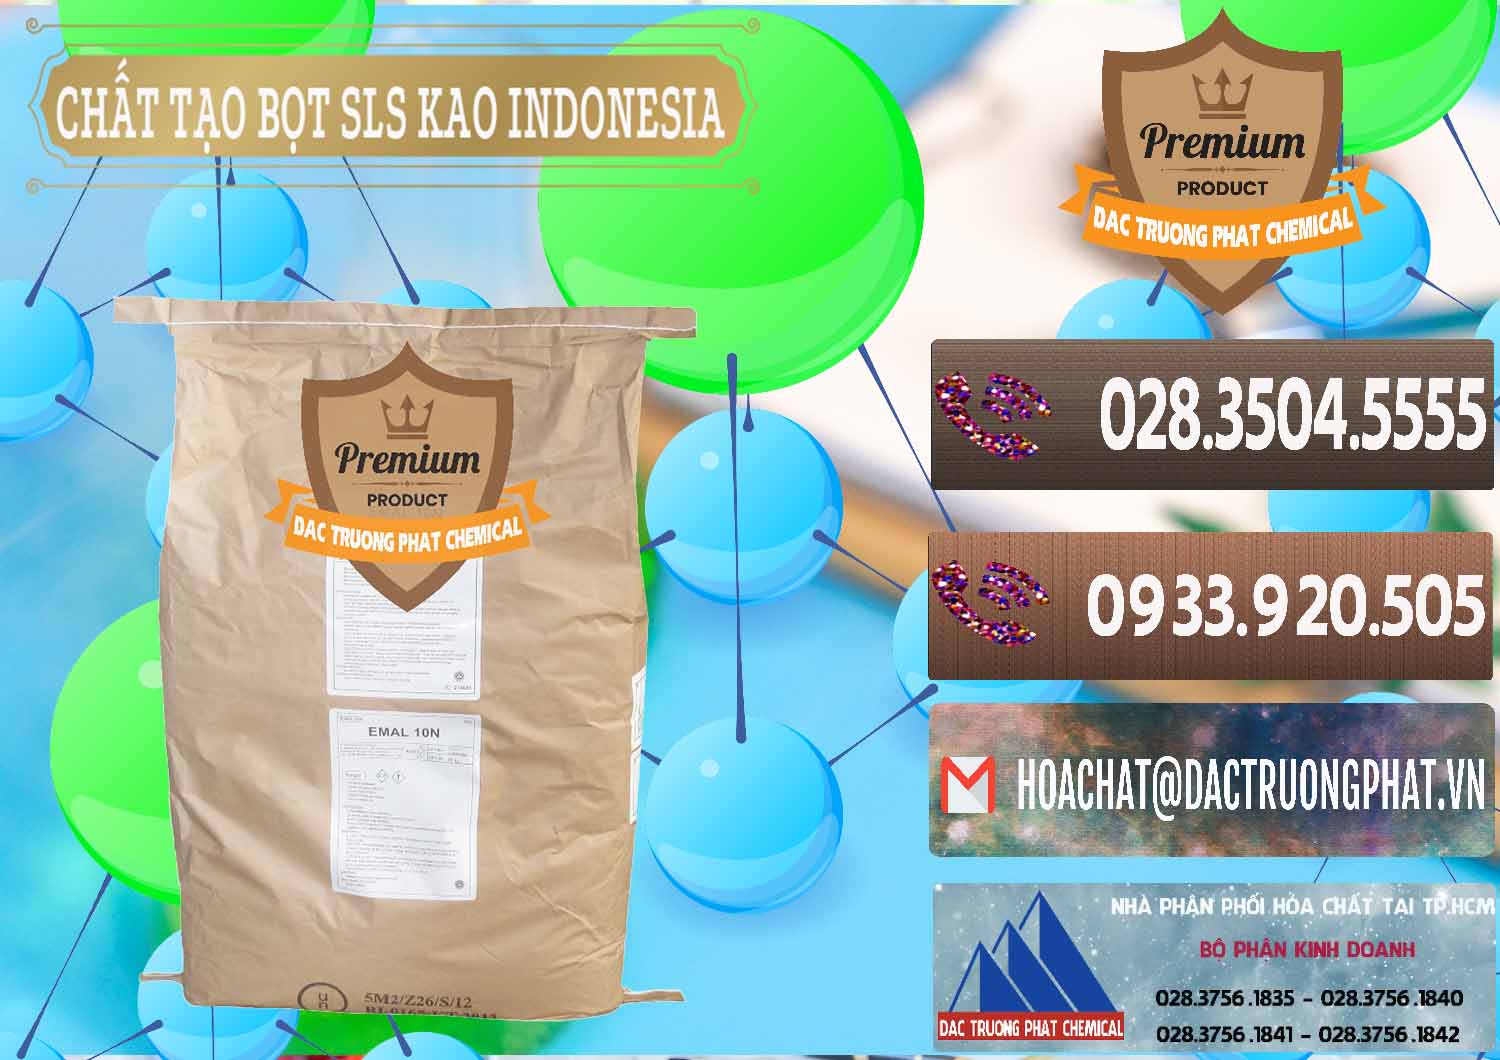 Cty bán - phân phối Chất Tạo Bọt SLS - Sodium Lauryl Sulfate EMAL 10N KAO Indonesia - 0047 - Công ty chuyên nhập khẩu & phân phối hóa chất tại TP.HCM - hoachatviet.net